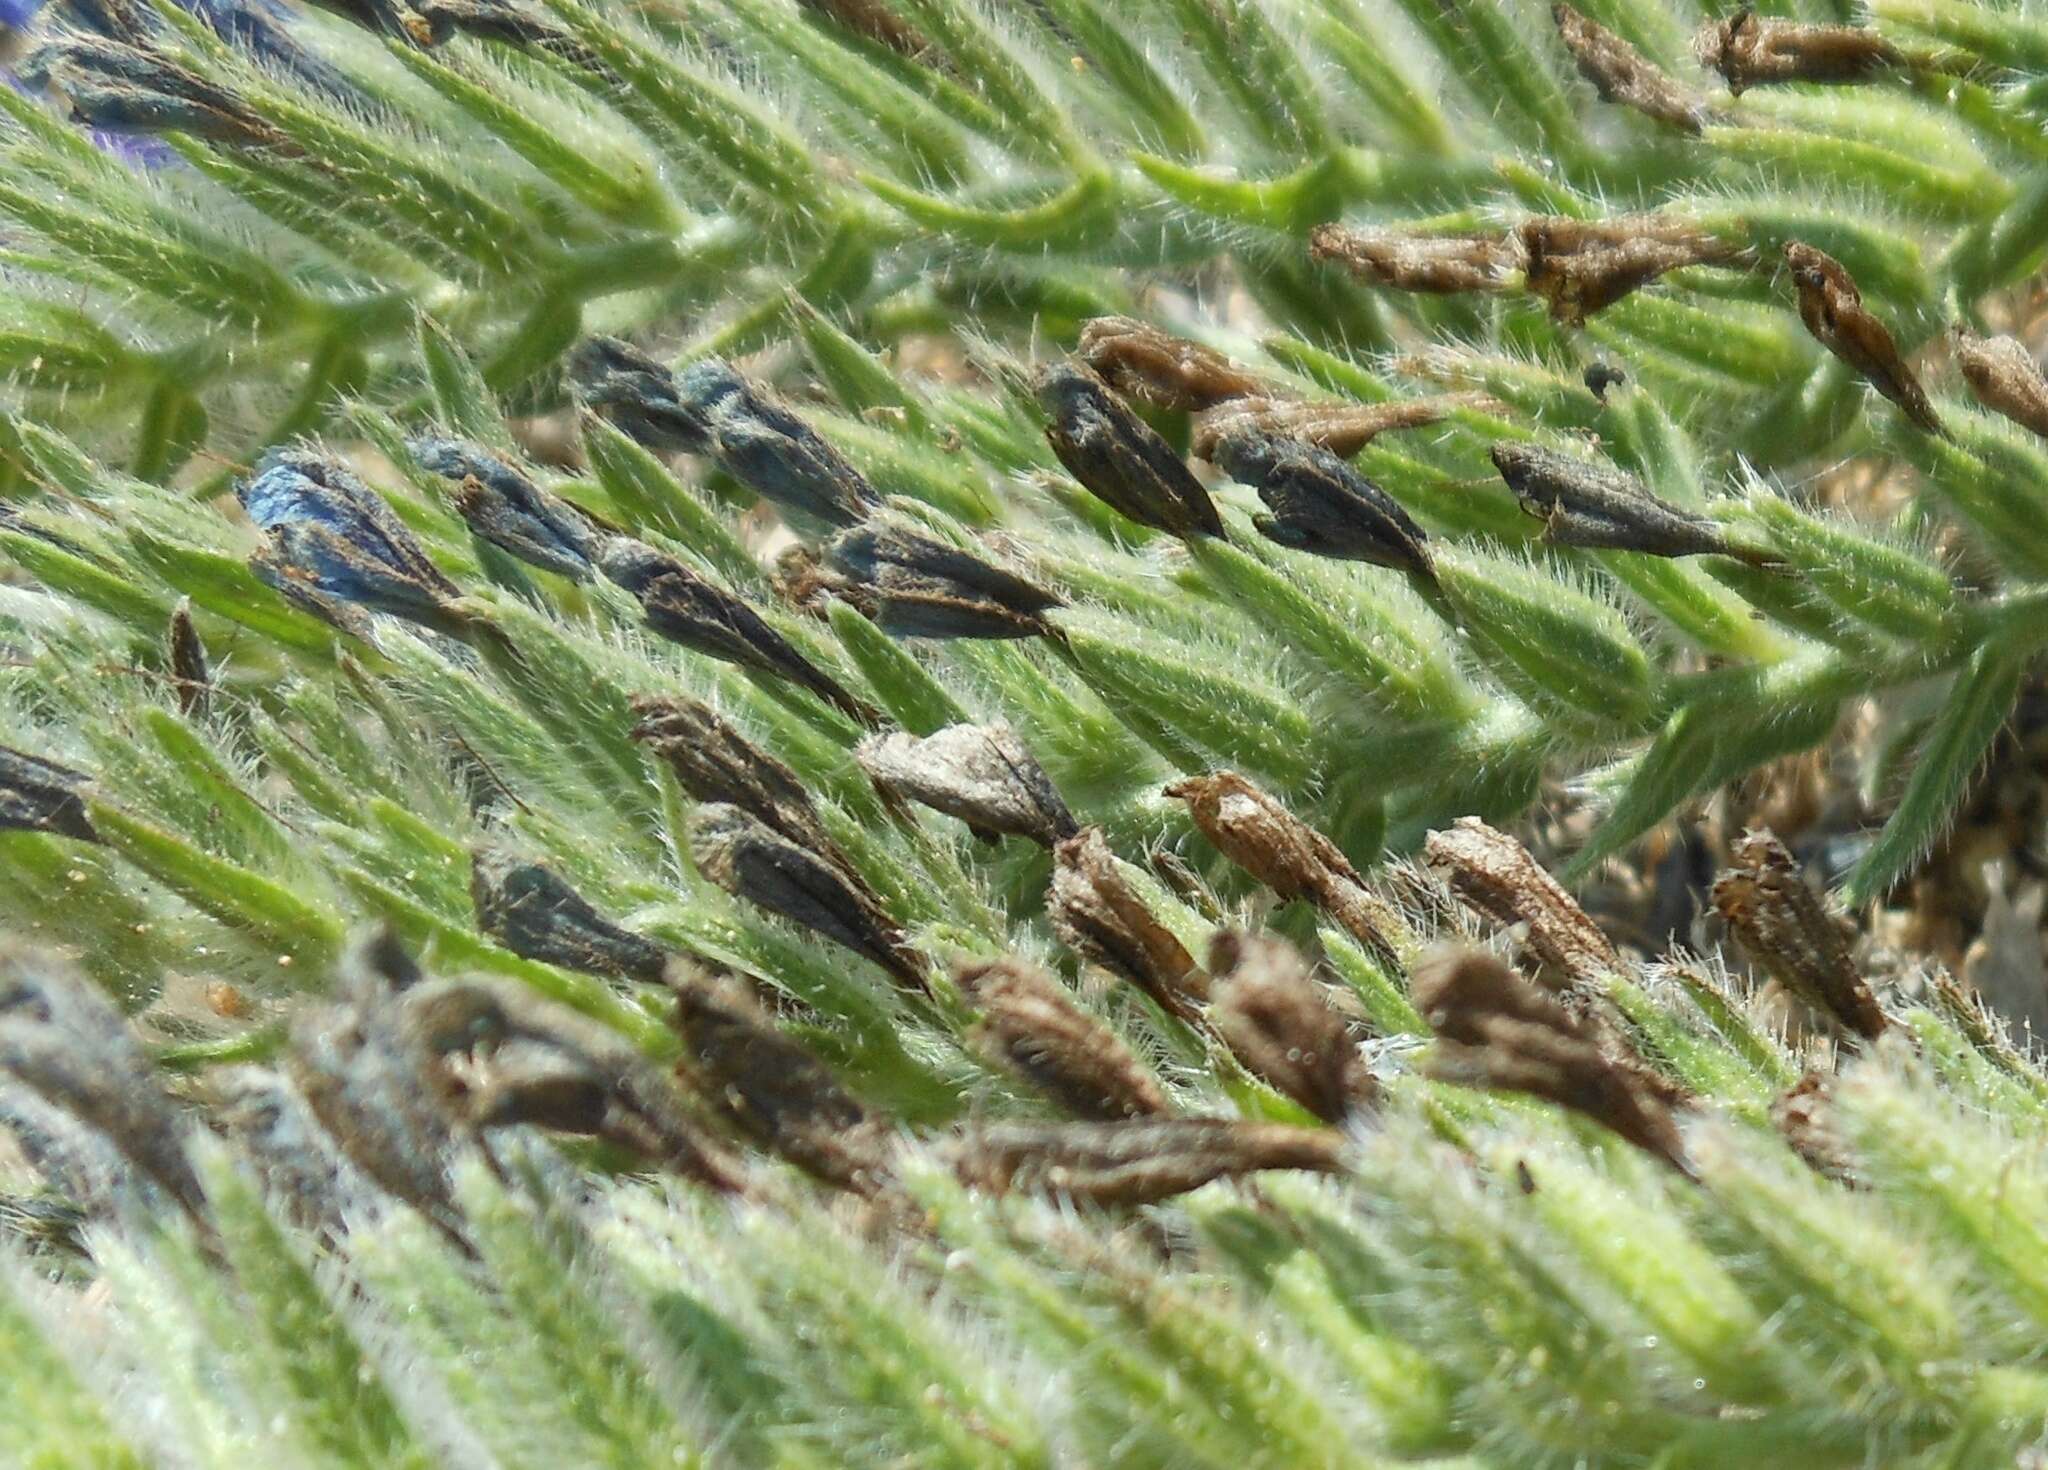 Image of Echium sabulicola subsp. sabulicola